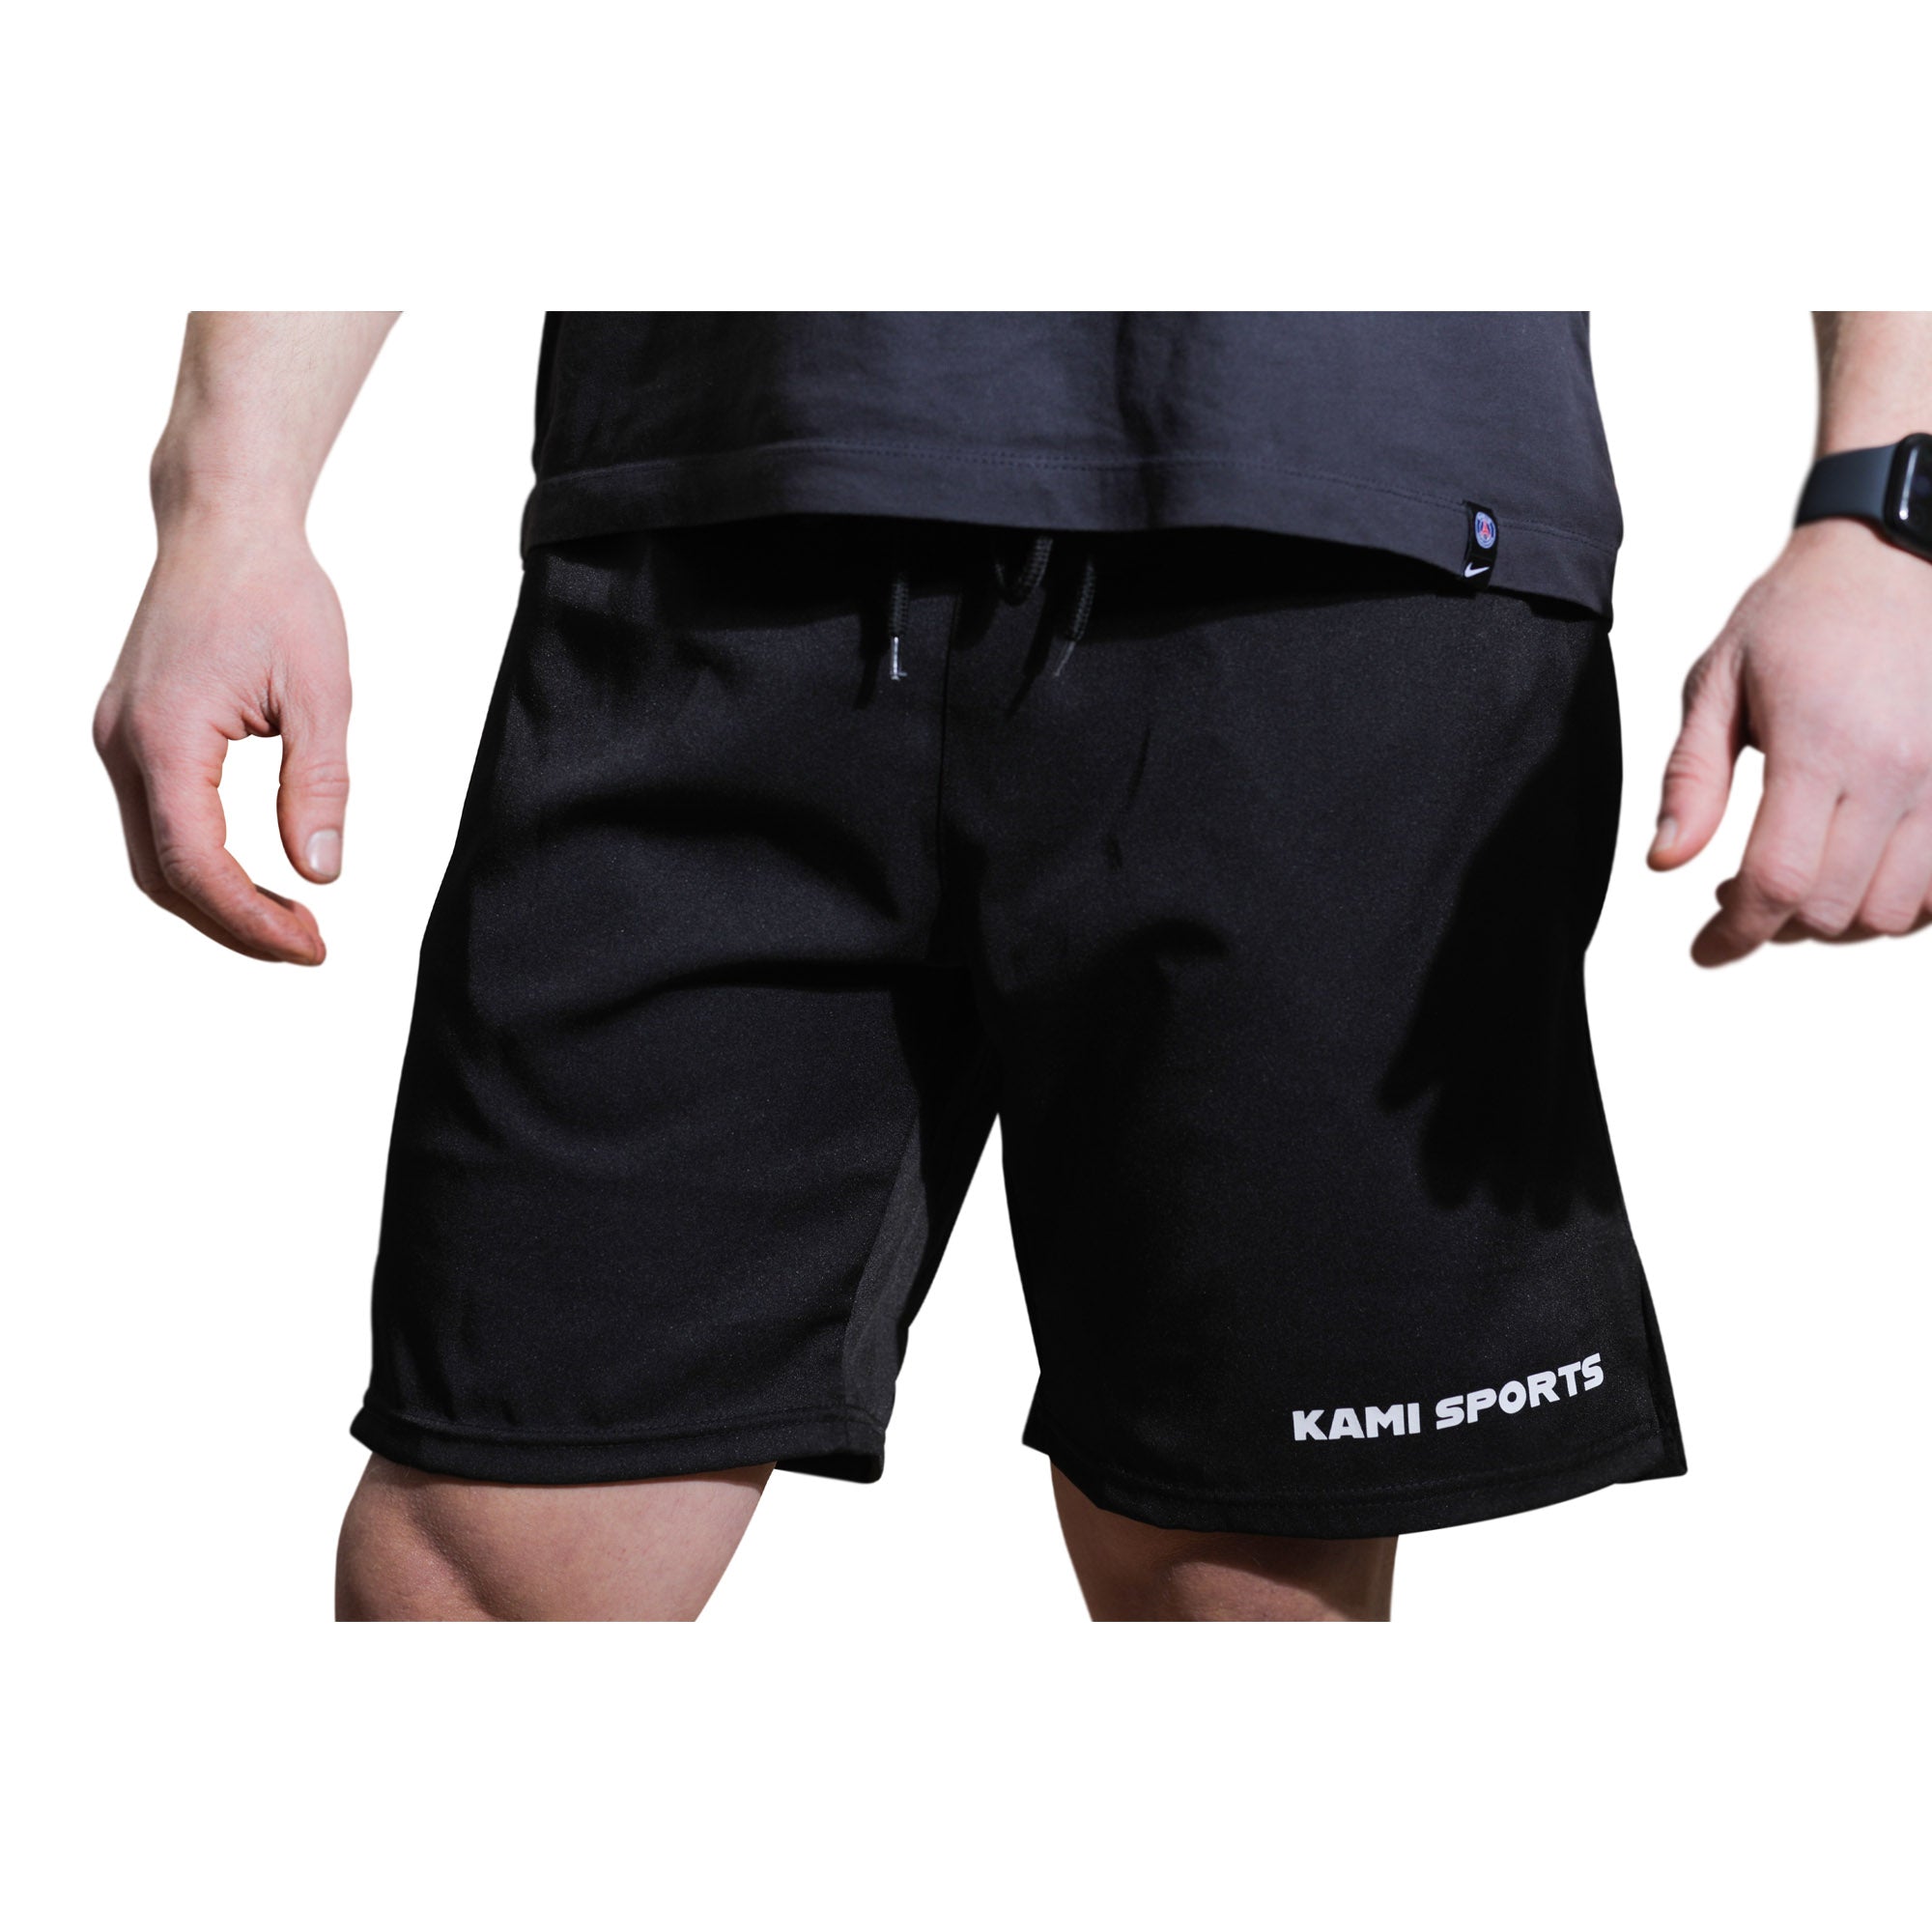 Multifunktionale Sport- und Freizeithose von Kami Sport mit Reißverschlusstaschen und integrierter Smartphone-Tasche, flexibel und komfortabel